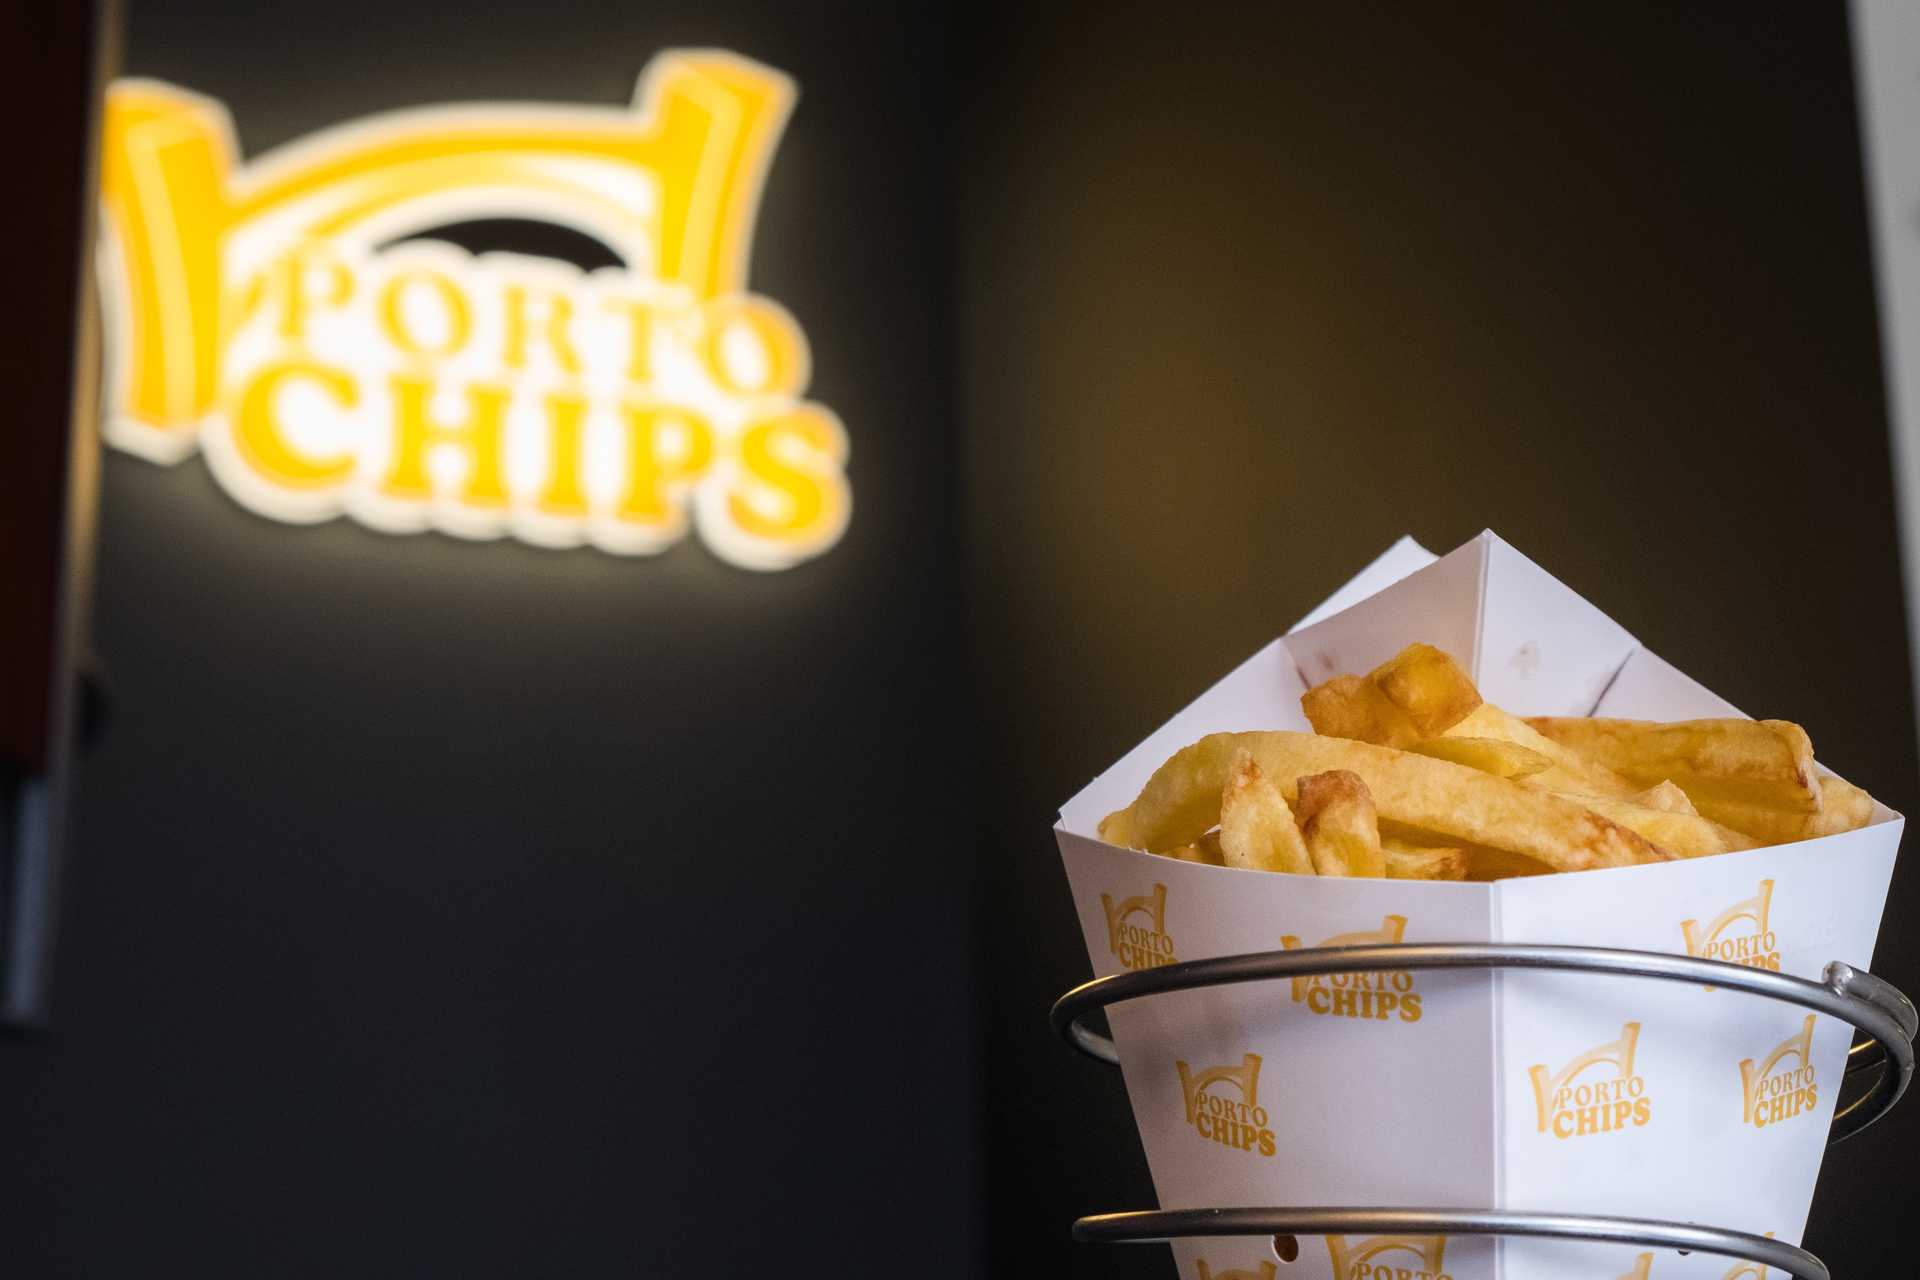 Porto Chips – Batata Frita